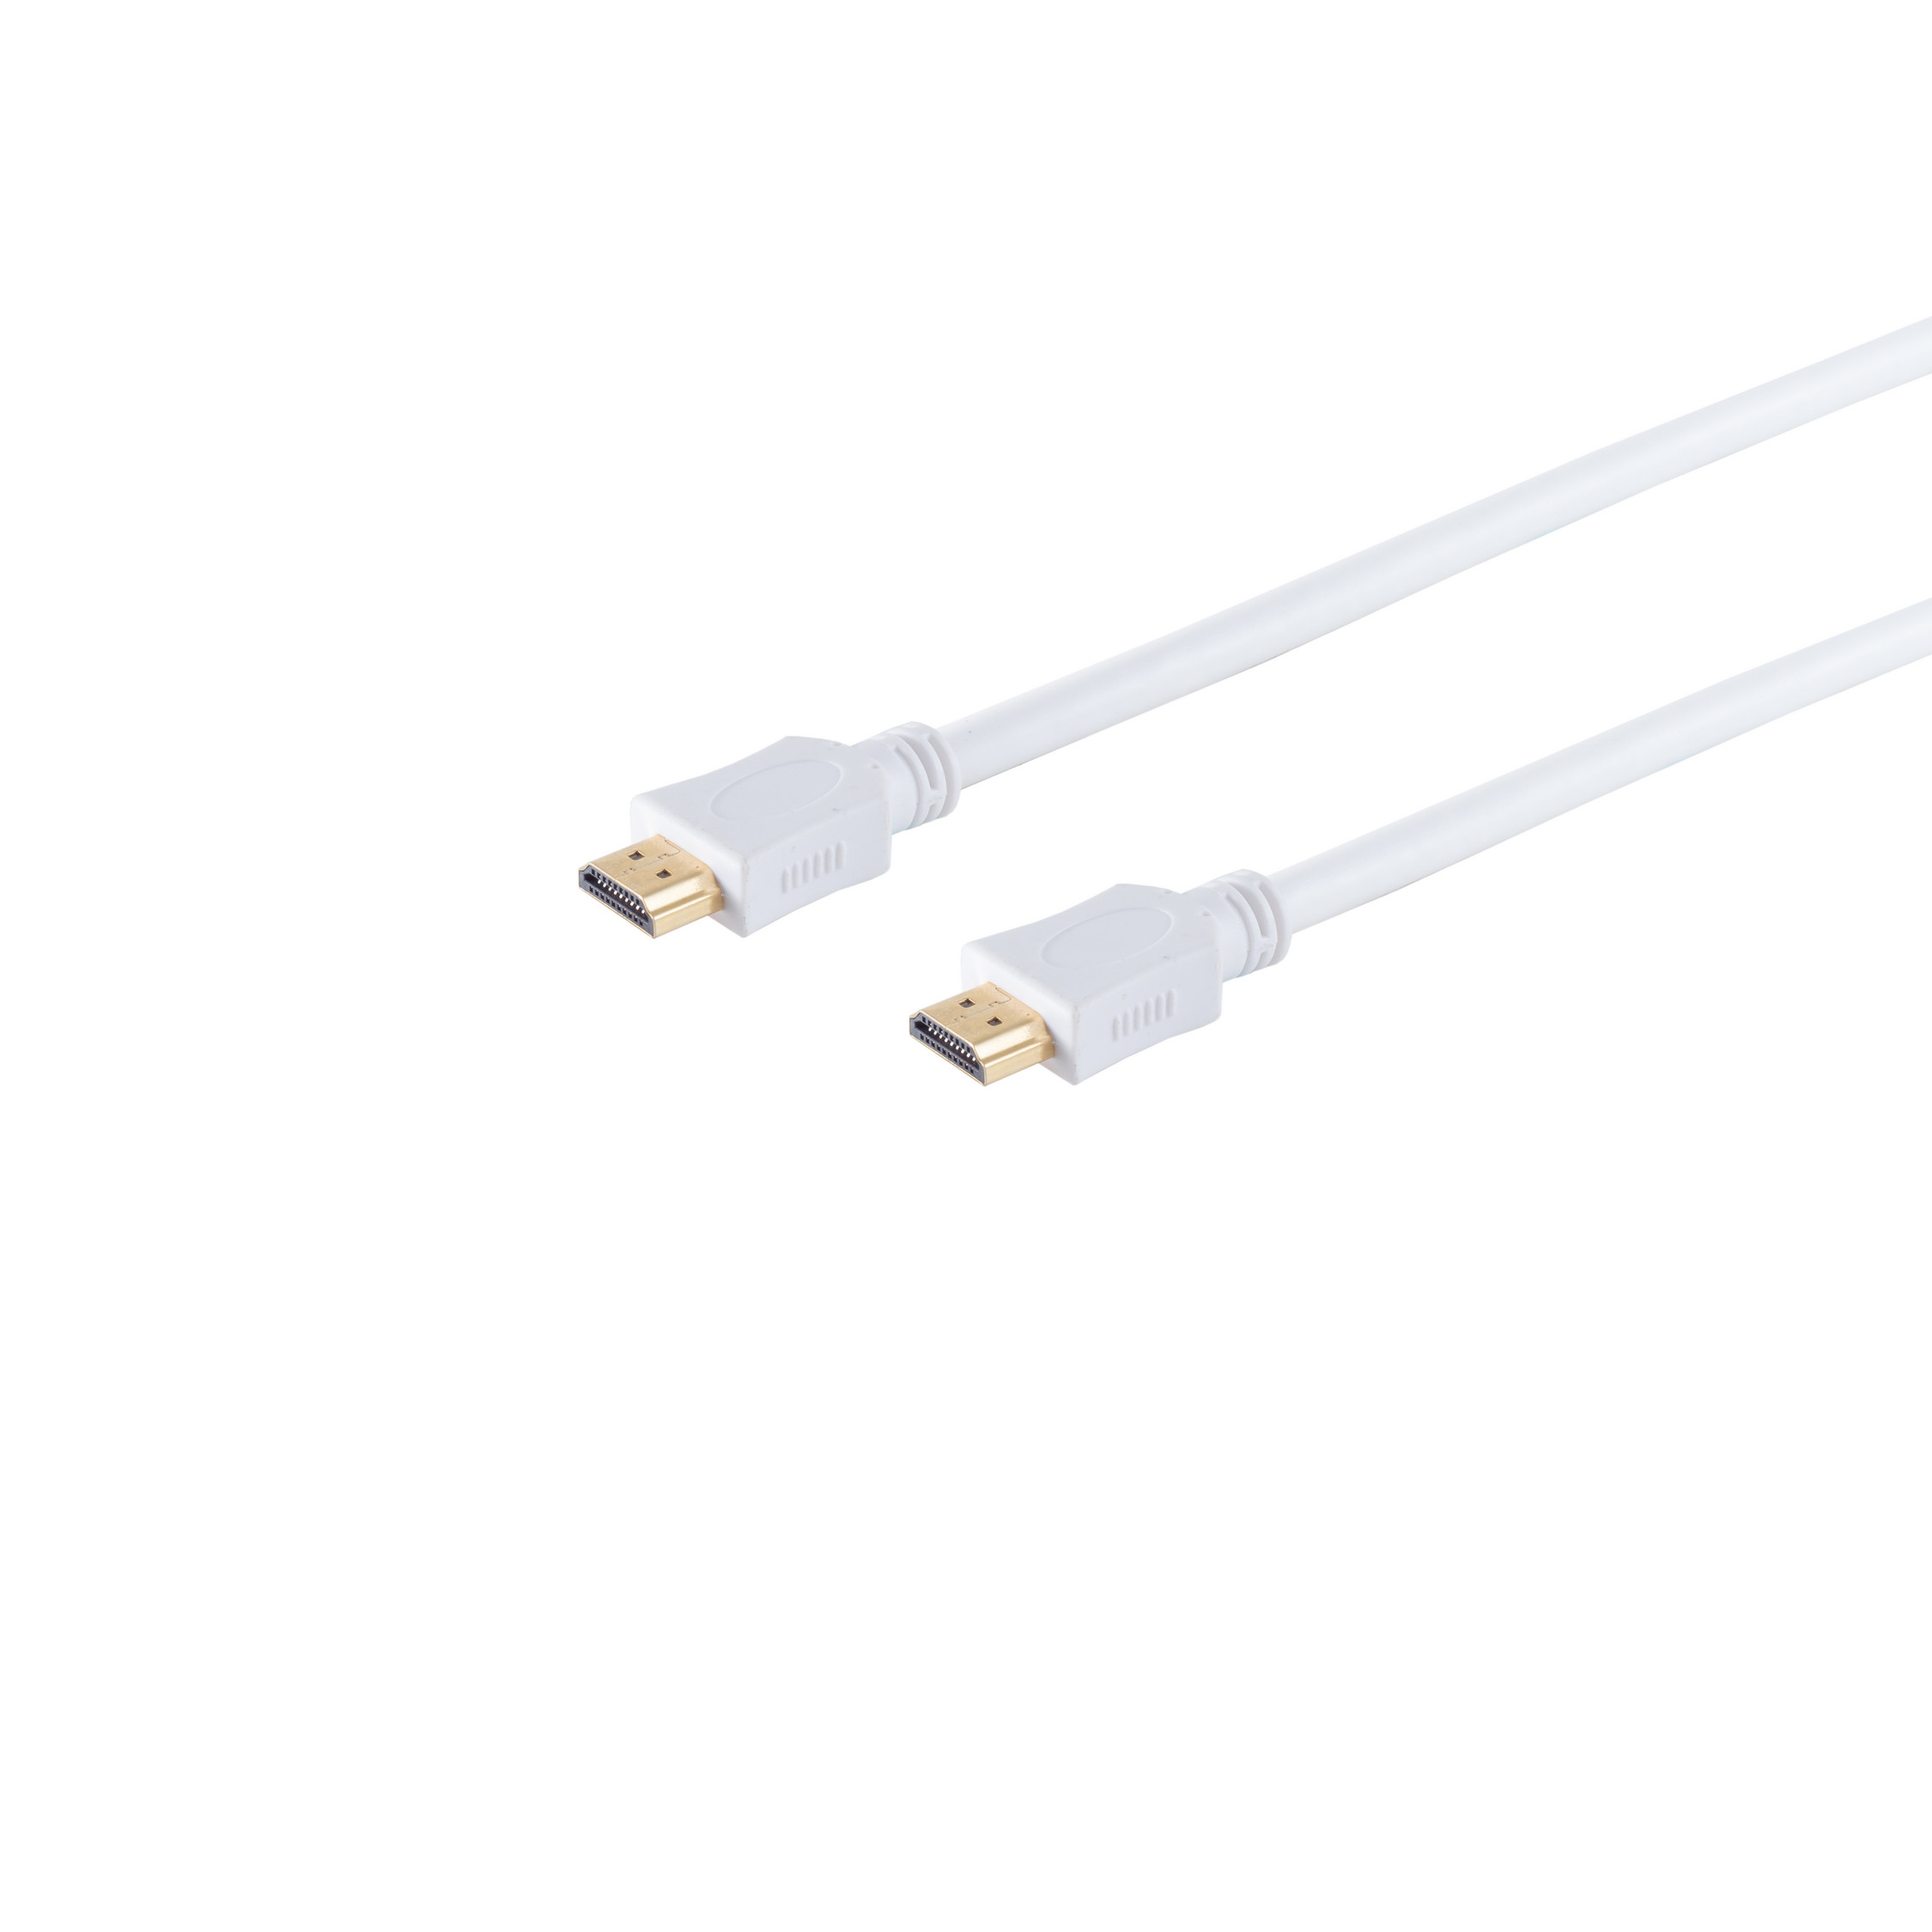 Kabel S/CONN A-Stecker HDMI weiß MAXIMUM 5m A-Stecker/HDMI verg. HEAC HDMI CONNECTIVITY